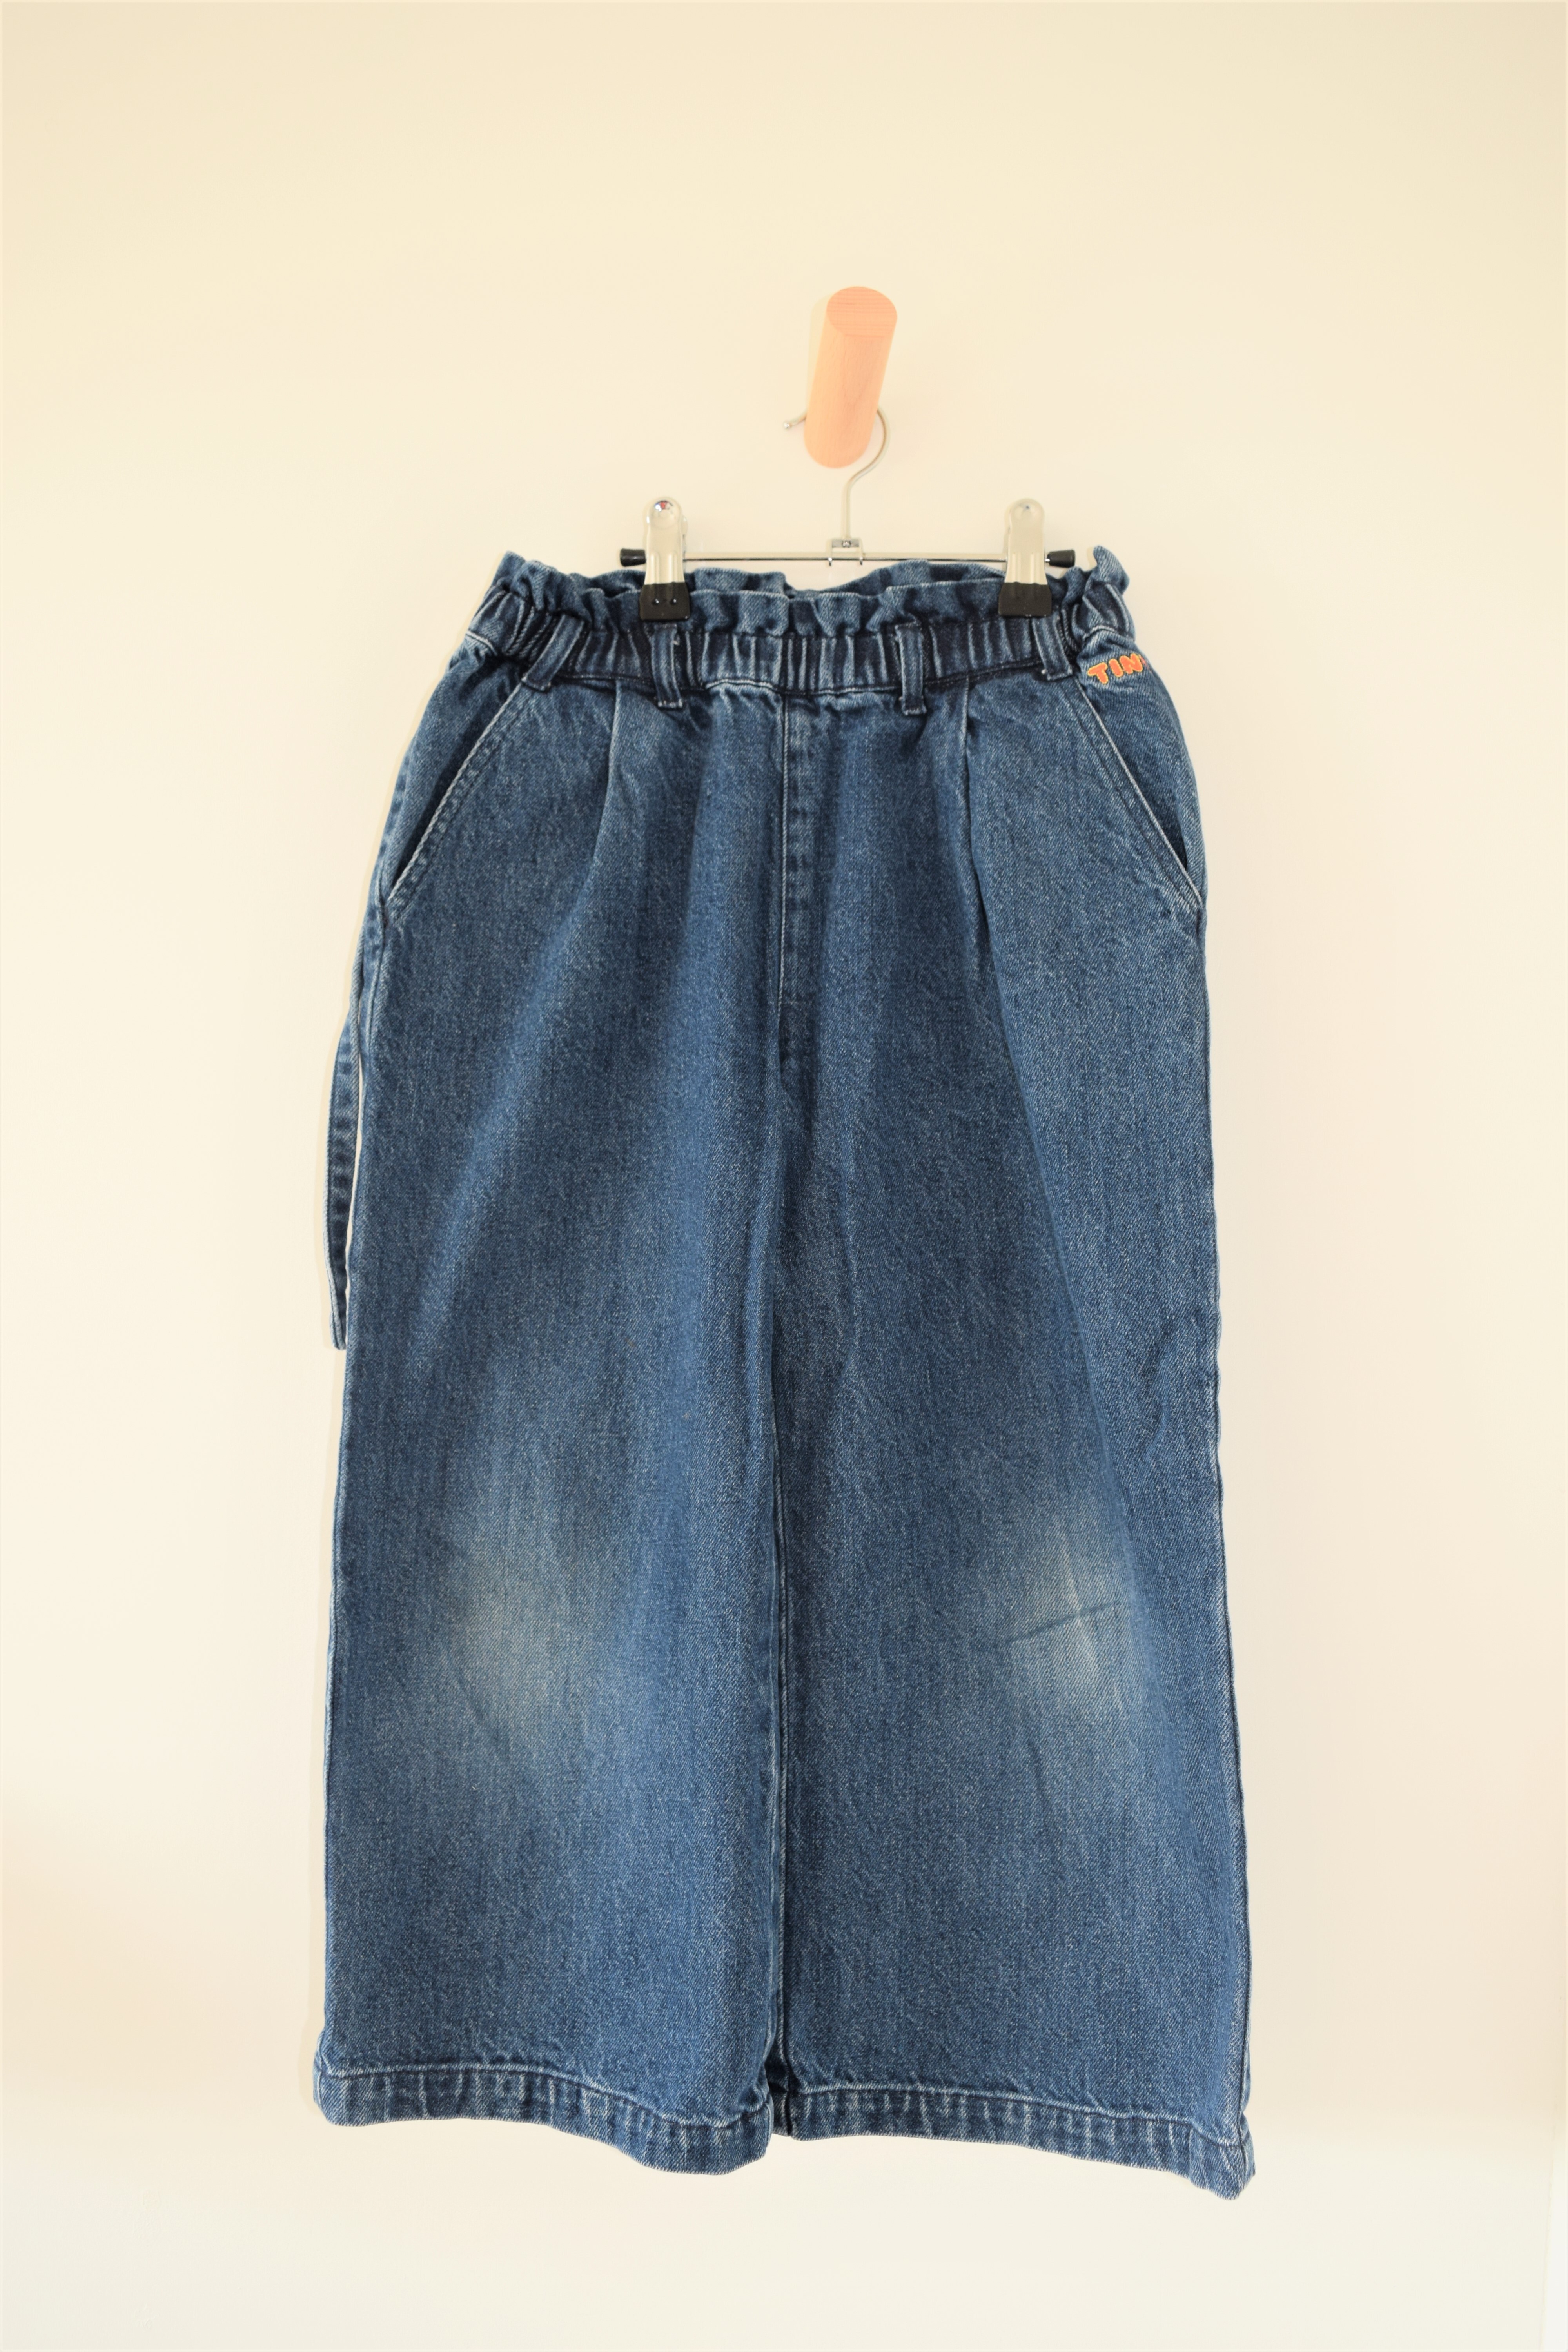 Jeansbroek, Tiny Cottons, 8 jaar 